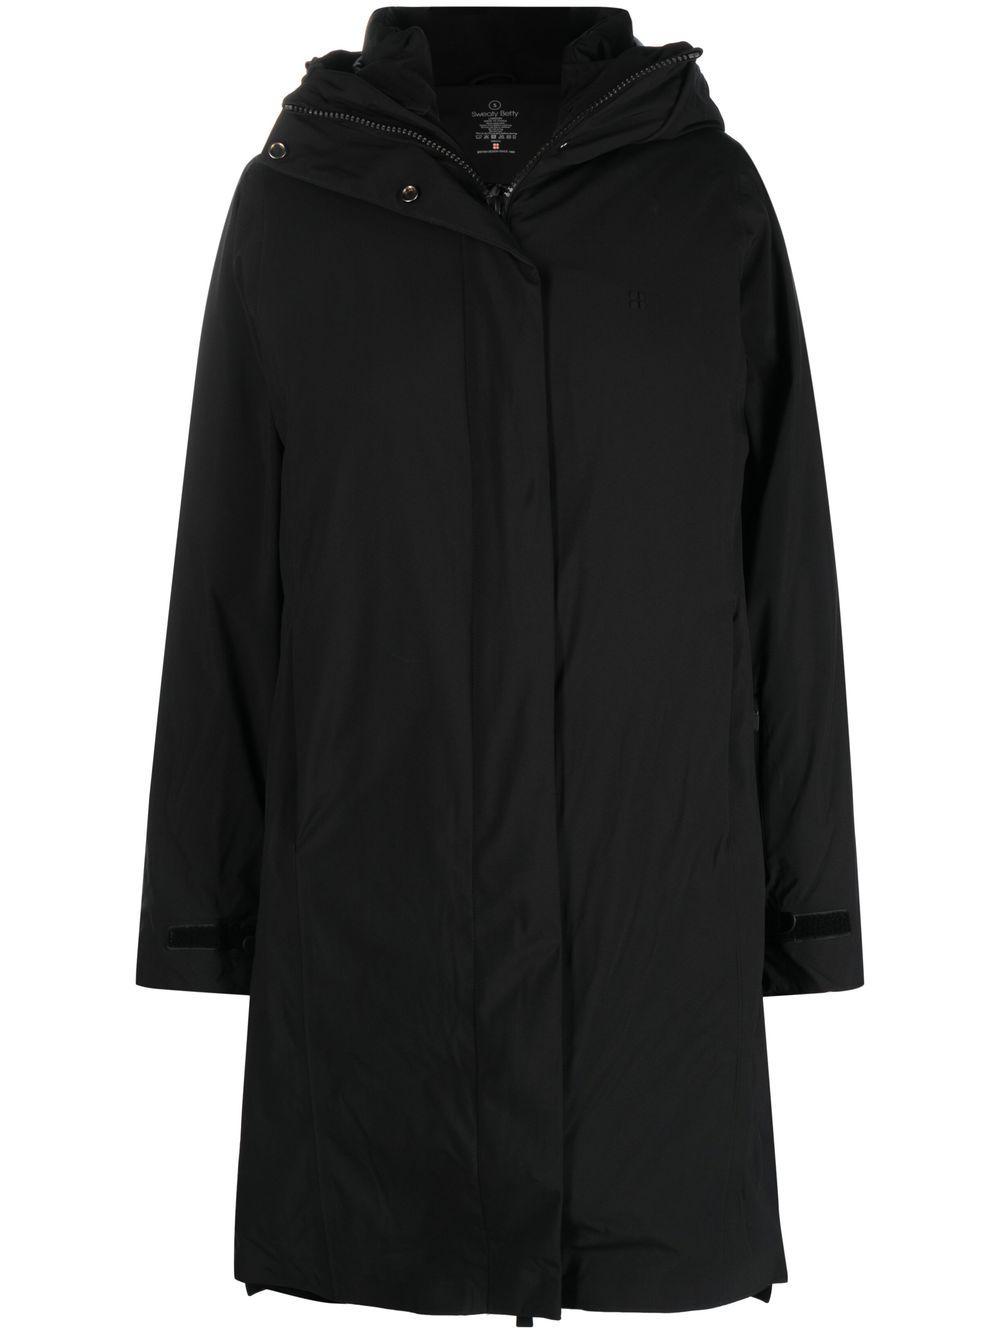 Sweaty Betty Climate 3 In 1 Ski Jacket in Black | Lyst